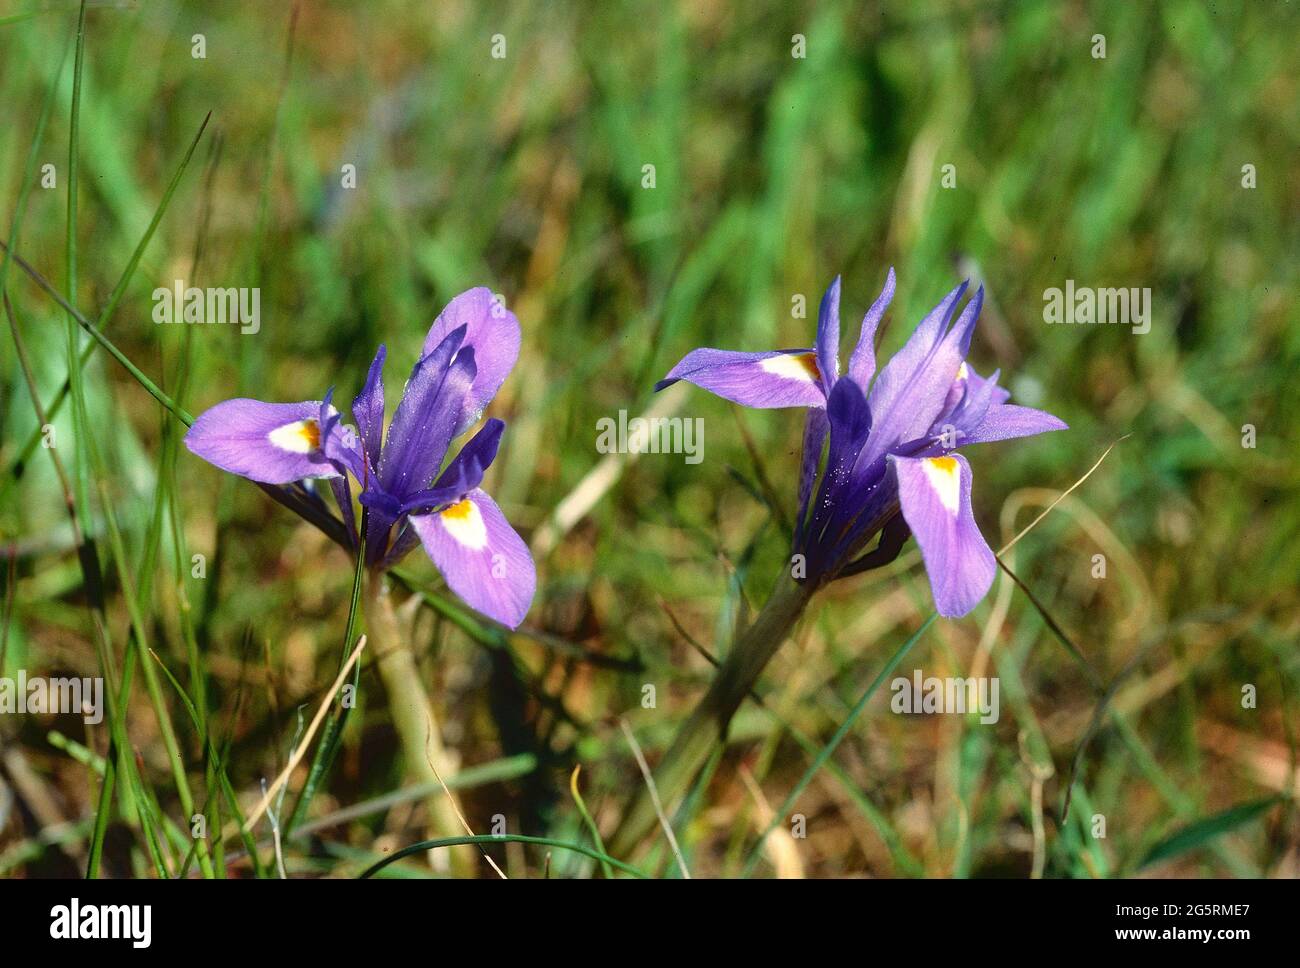 Mittags-Schwertlilie, Iris sisyrinchium, Iridaceae, blühend, Schwertlile, Blume, Pflanze, El Torcal, Nationalpark, Andalusien, Spanien Stock Photo